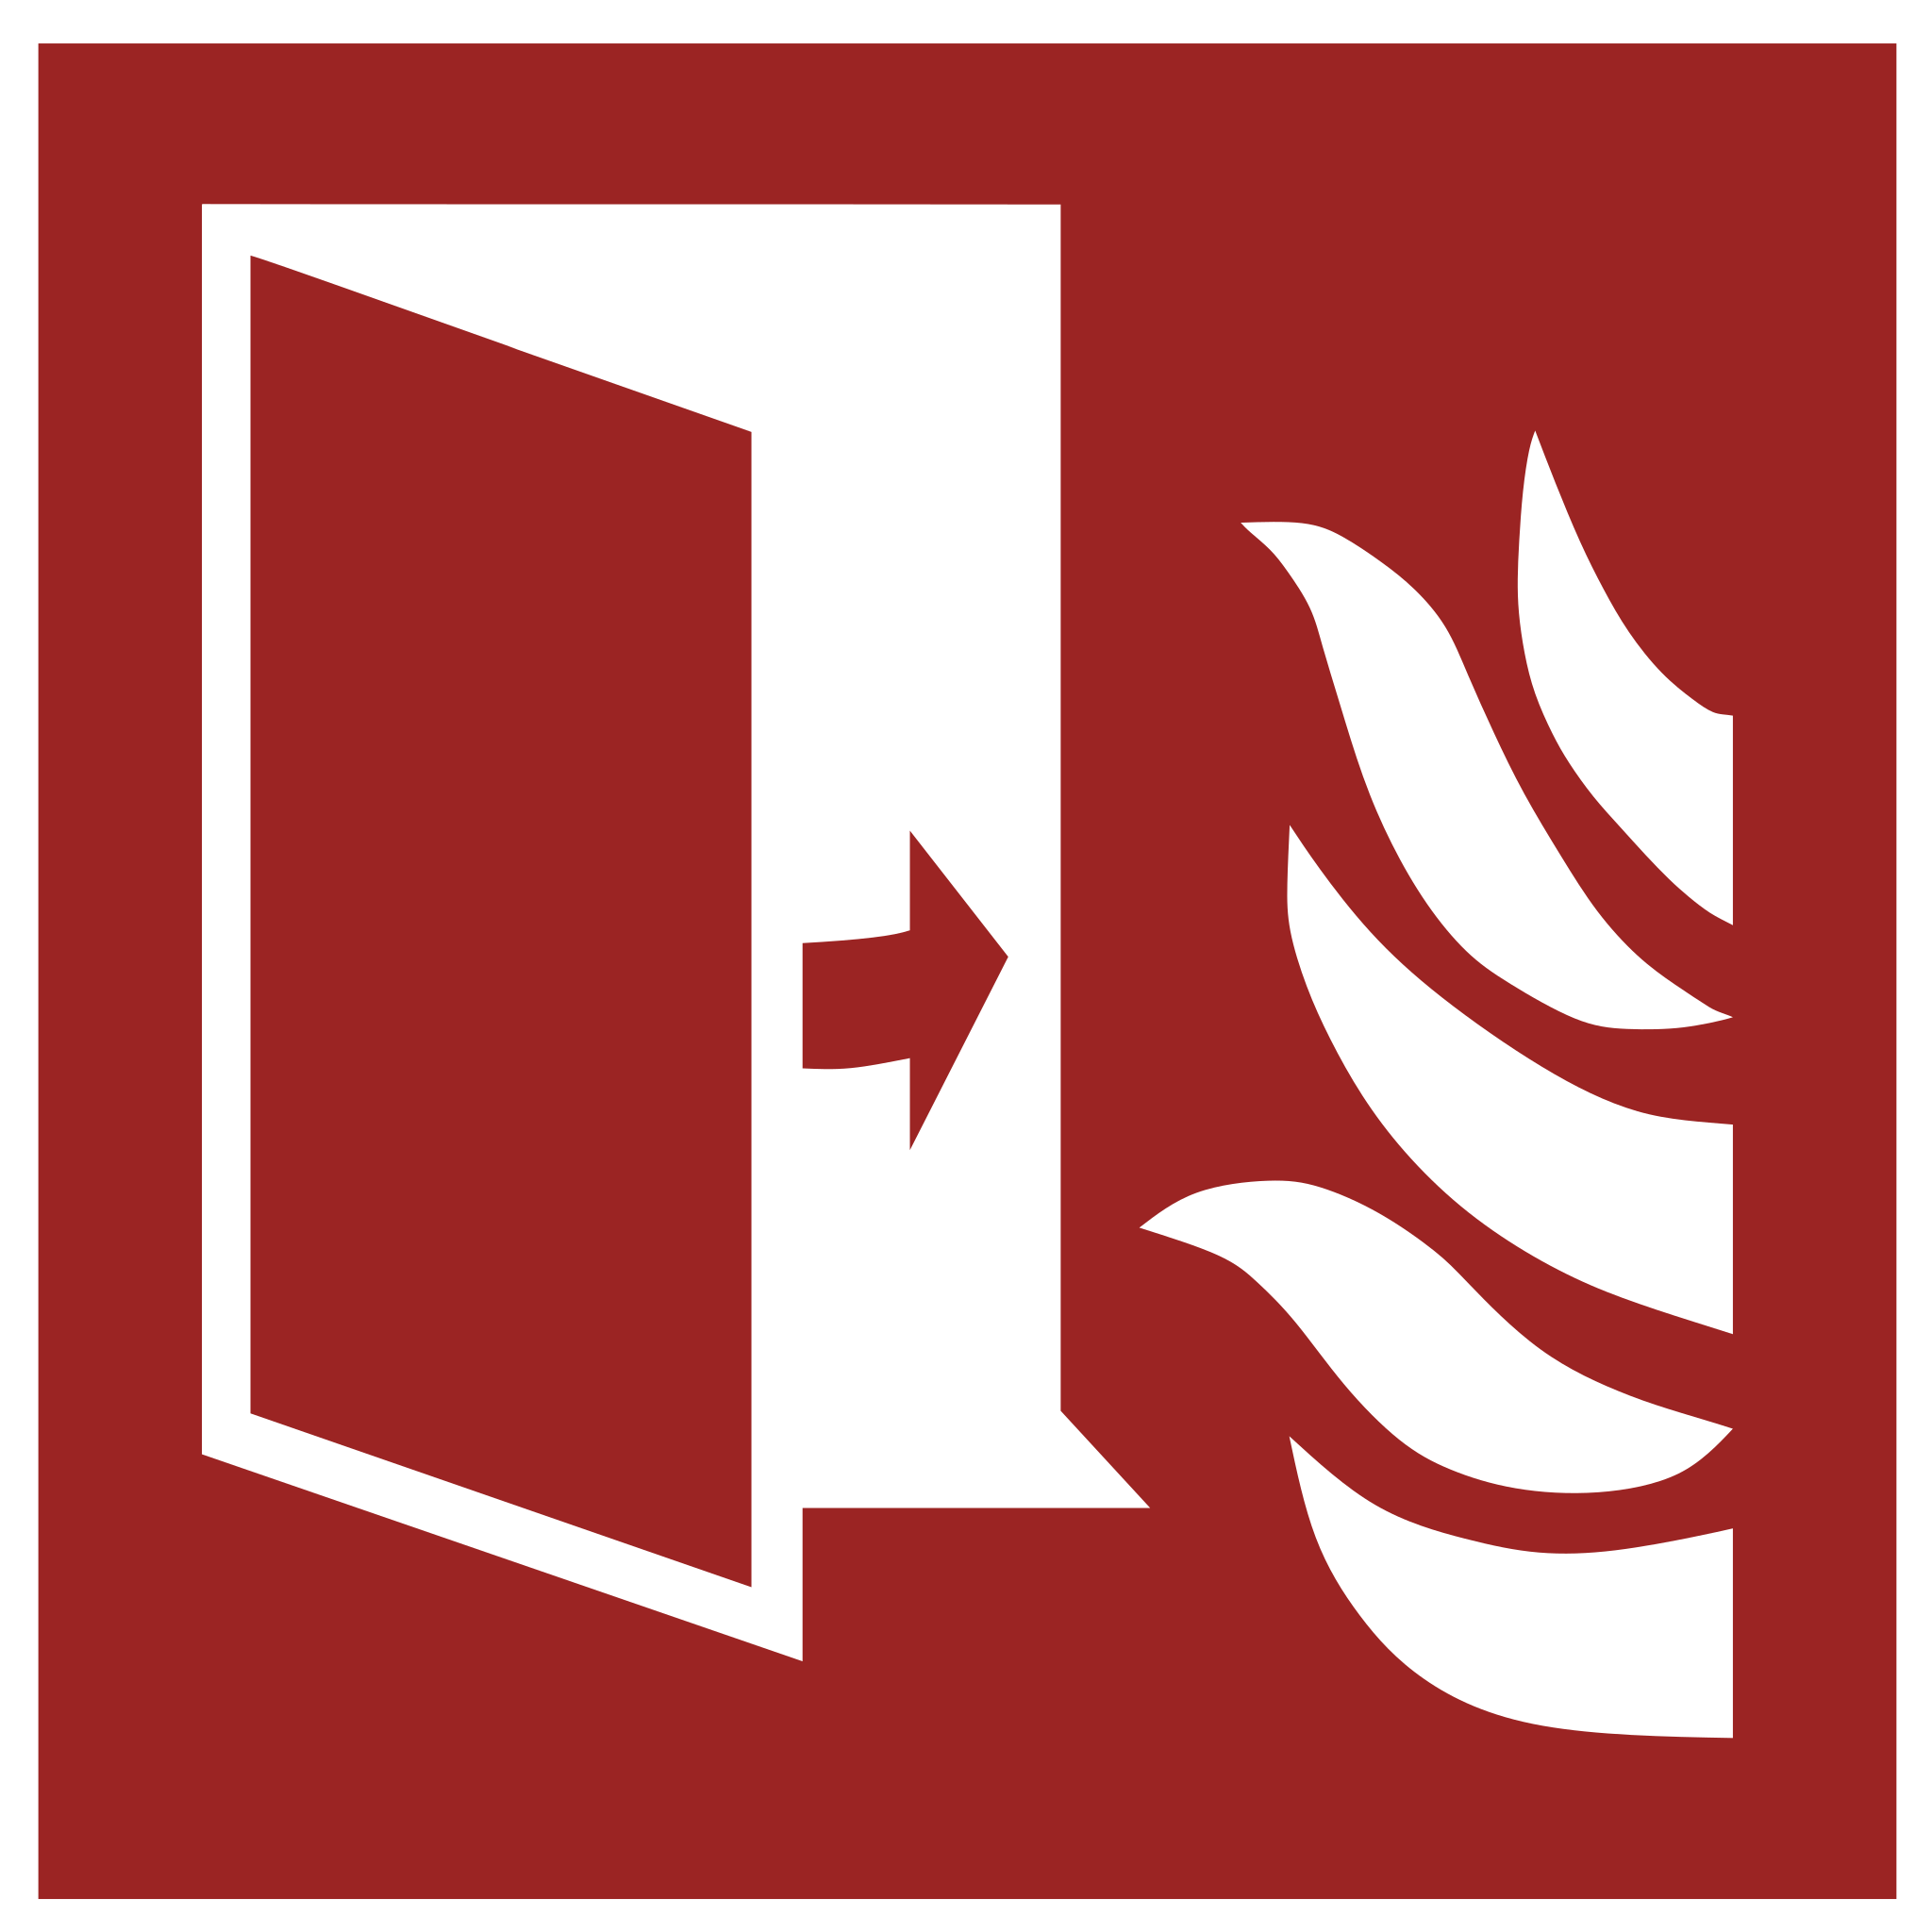 Fire door - Wikipedia